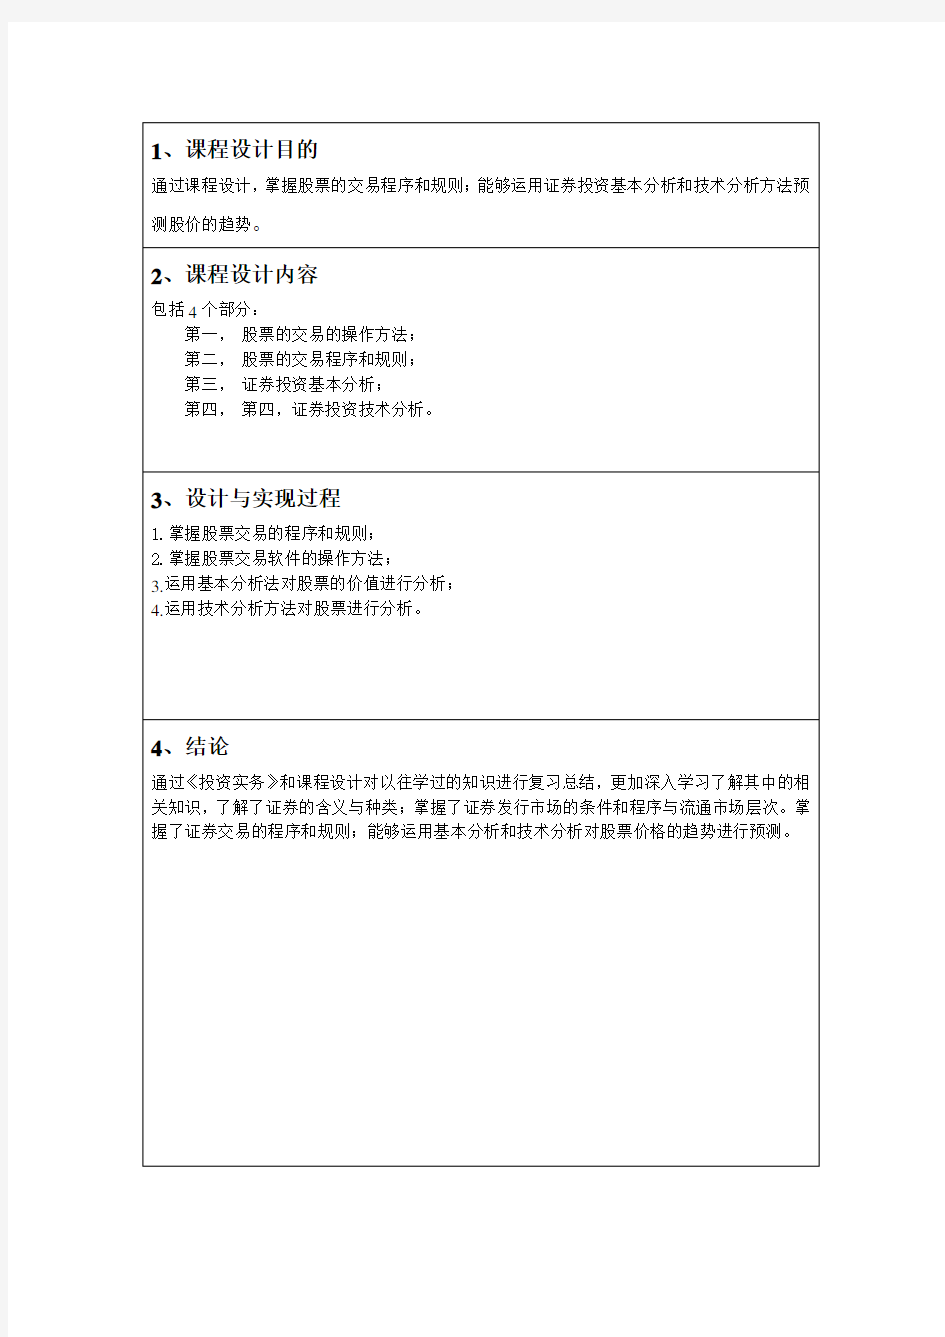 贵州茅台股票投资分析报告 (2)